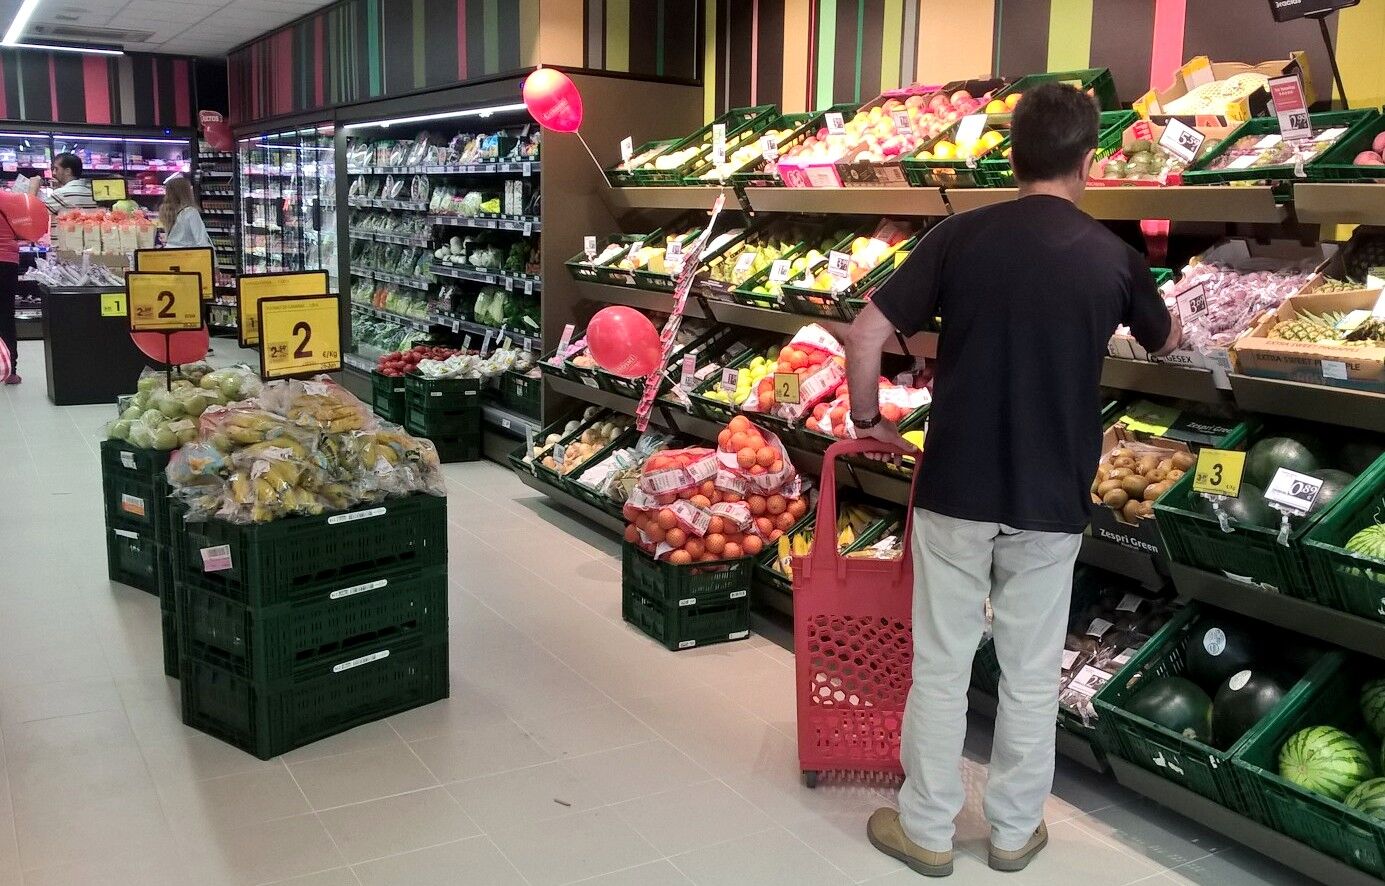 La sueca Essity, propietaria de Colhogar y Tena, sube los precios por la  inflación - Libre Mercado